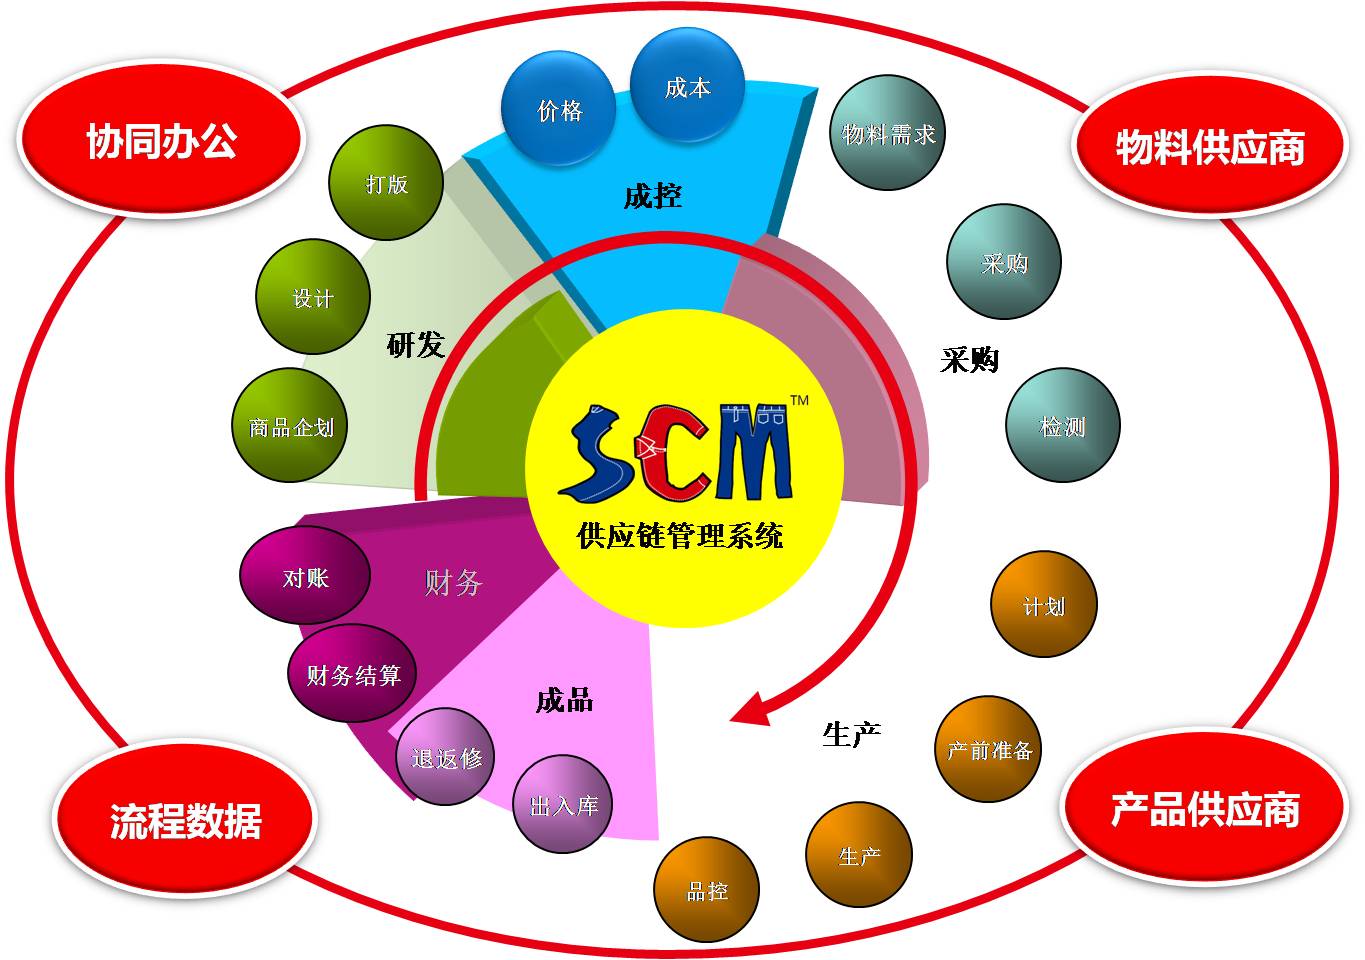 丰捷软件 广州丰捷企业管理服务有限公司 服装供应链管理系统 服装供应链 丰捷SCM SCM系统